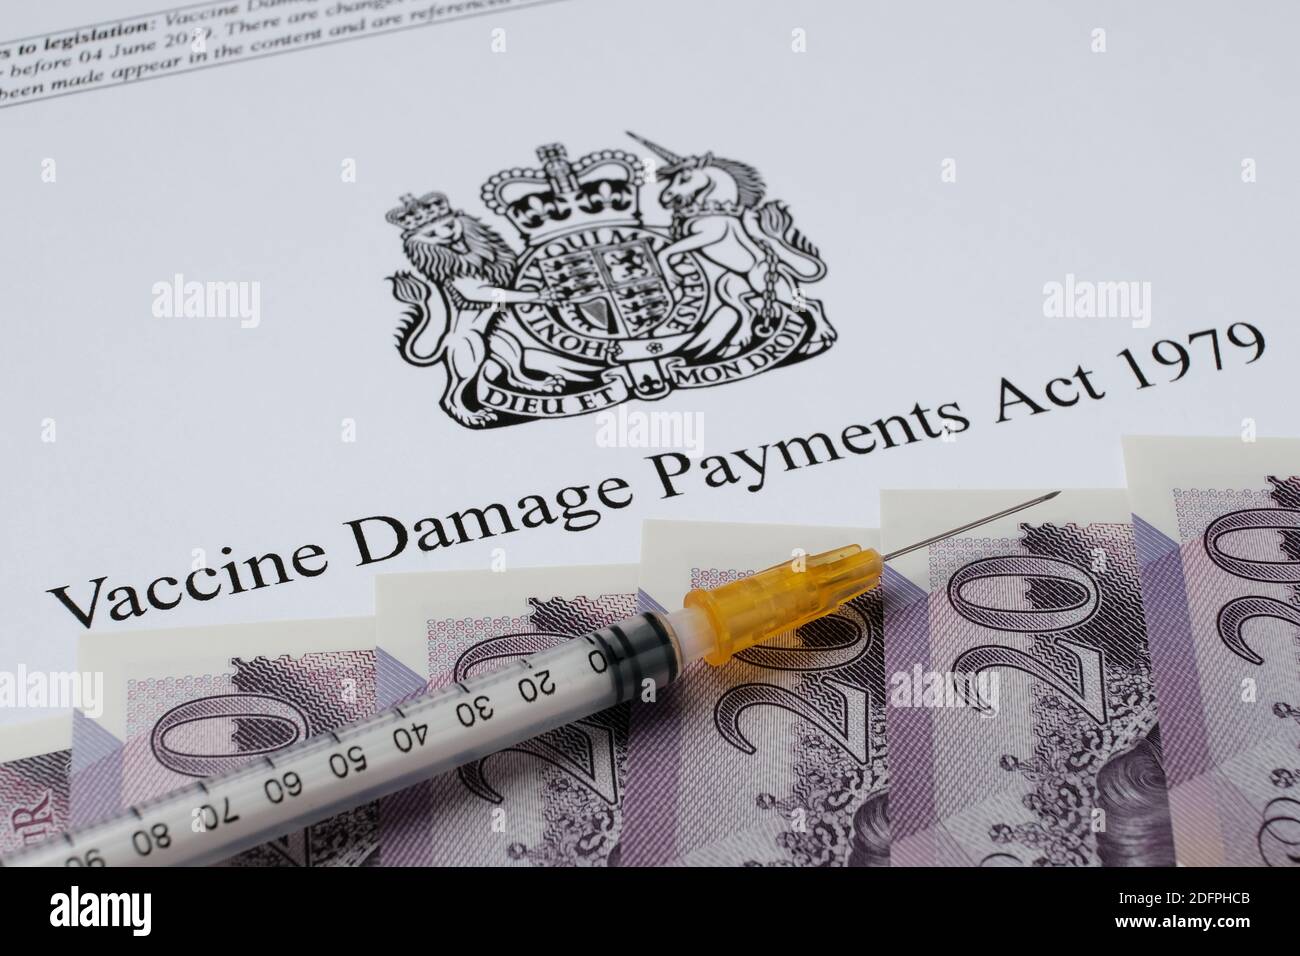 Stafford, Regno Unito - 6 dicembre 2020: UK Government's Vaccine Damage Payments Act. Immagine ravvicinata di denaro e siringa. Foto Stock